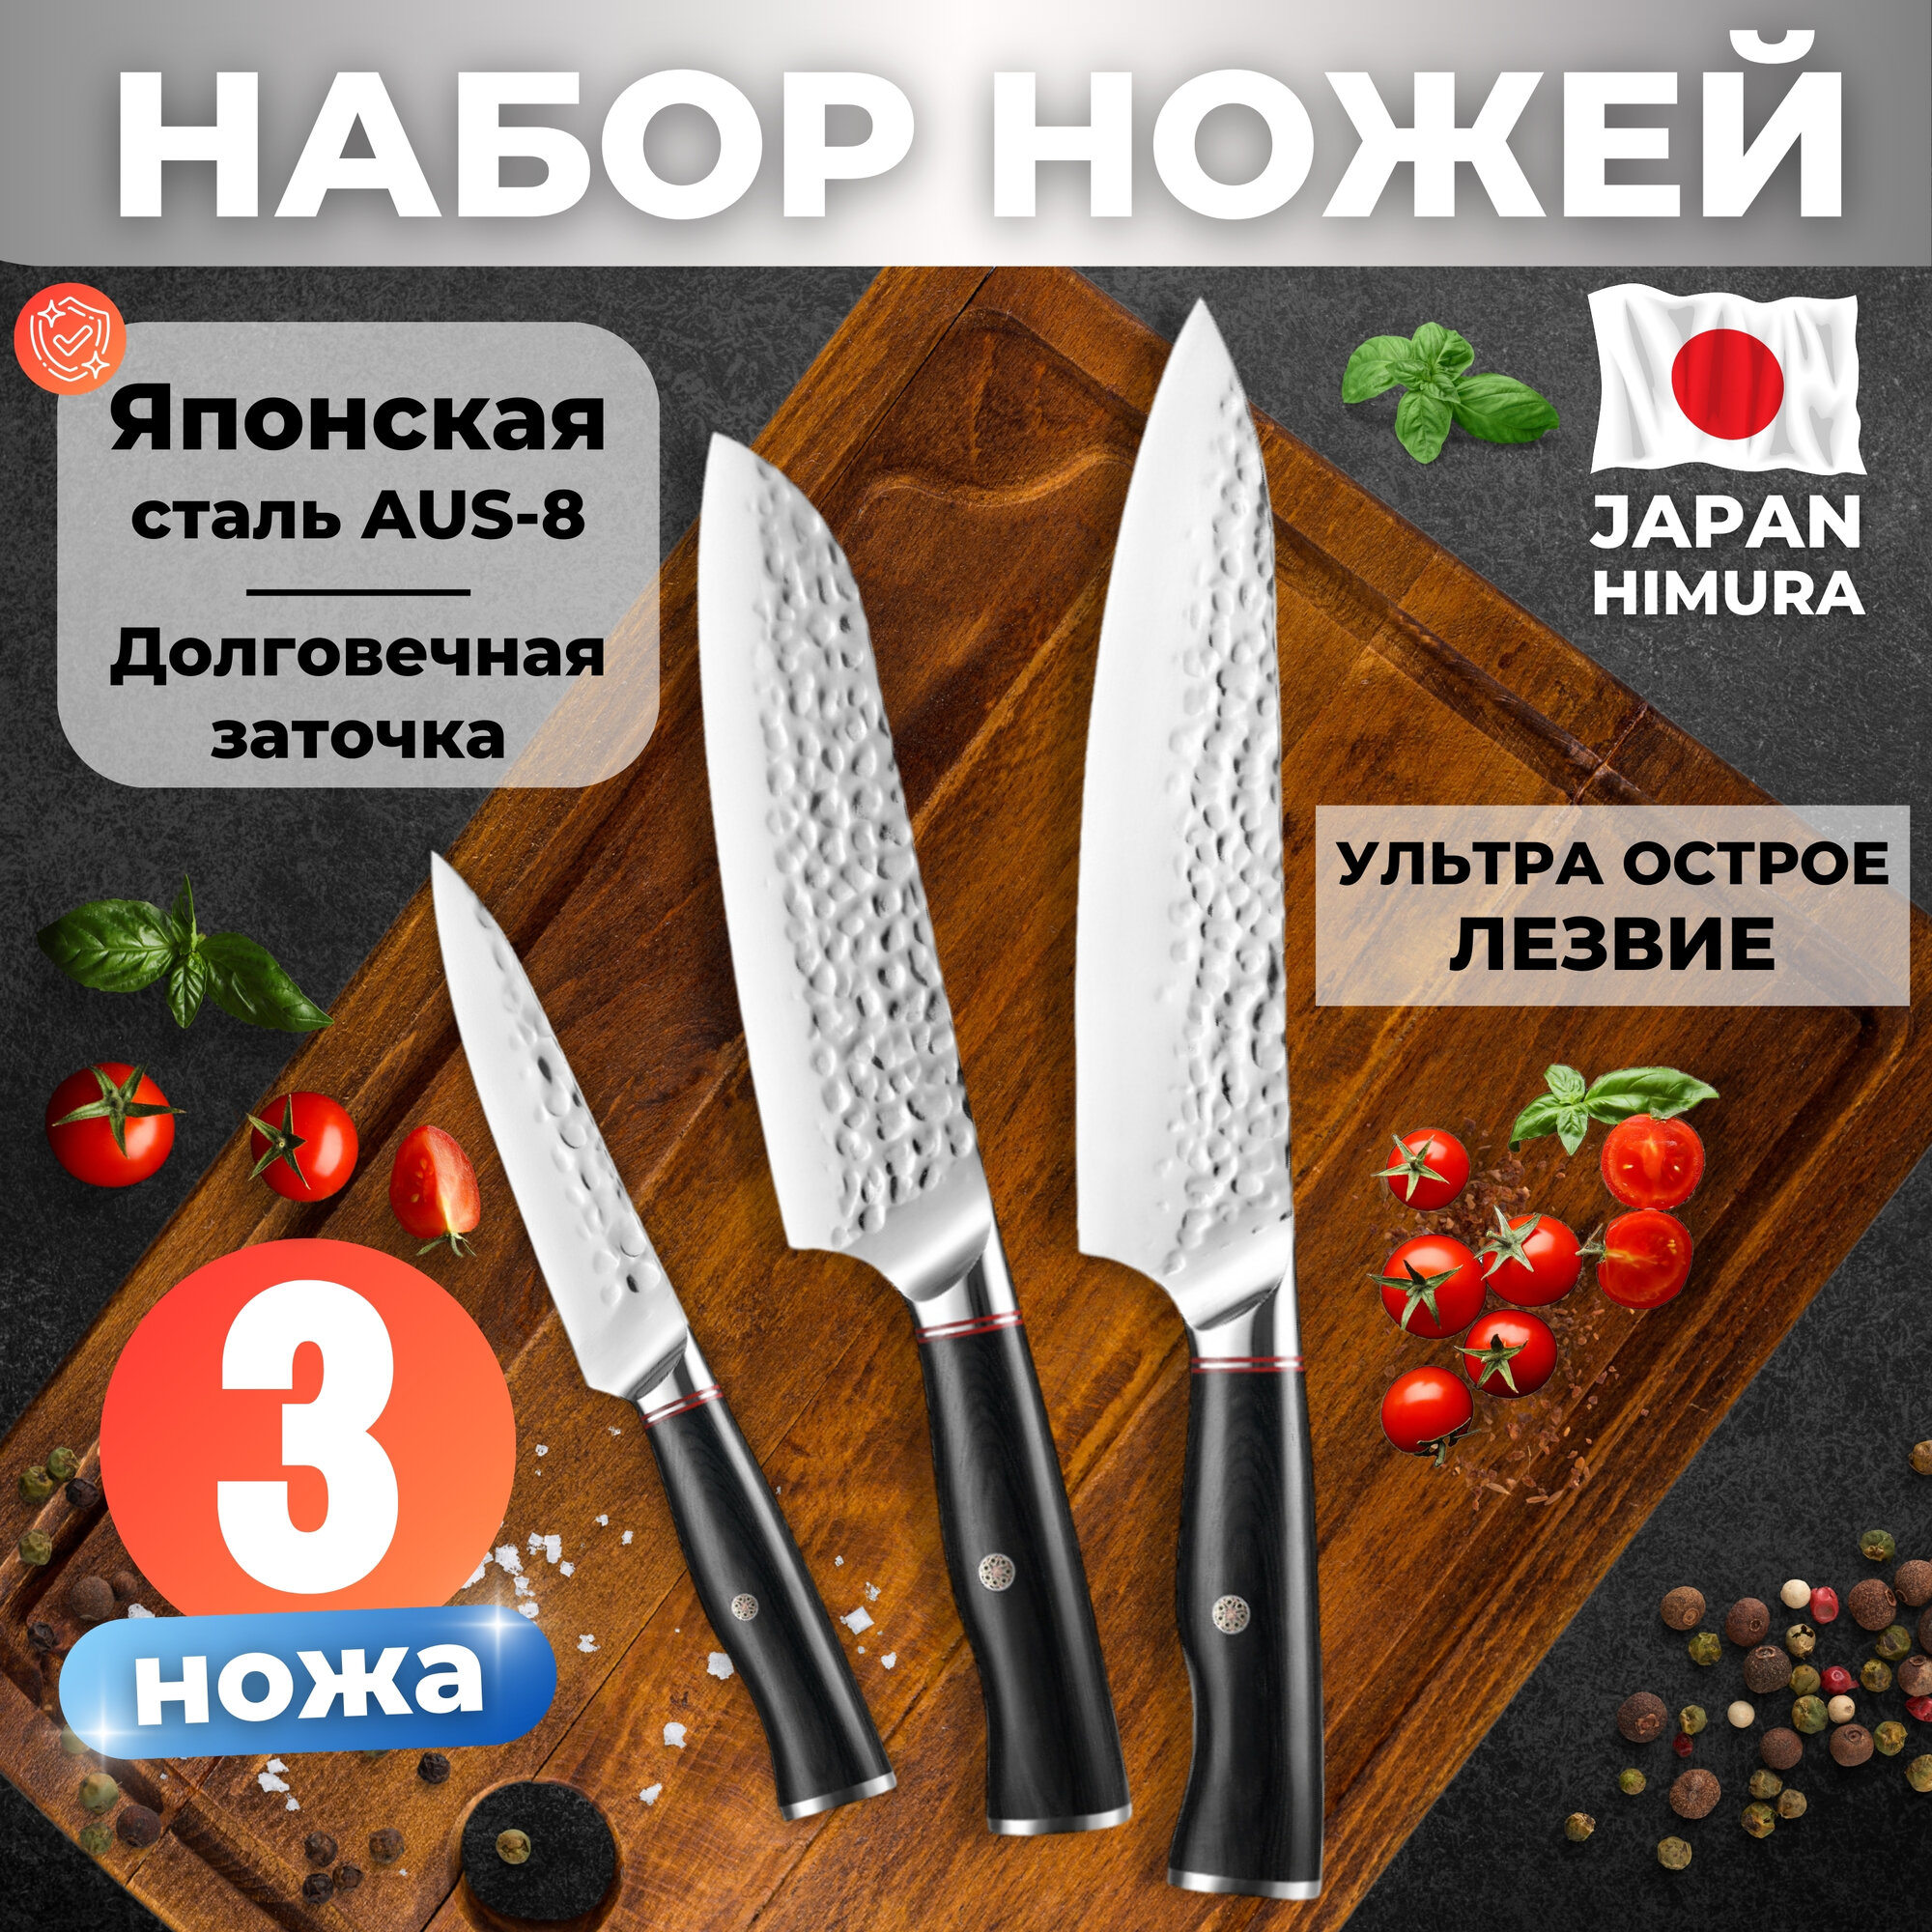 HIMURA / Профессиональный шеф нож для кухни / Нержавеющая сталь AUS-8